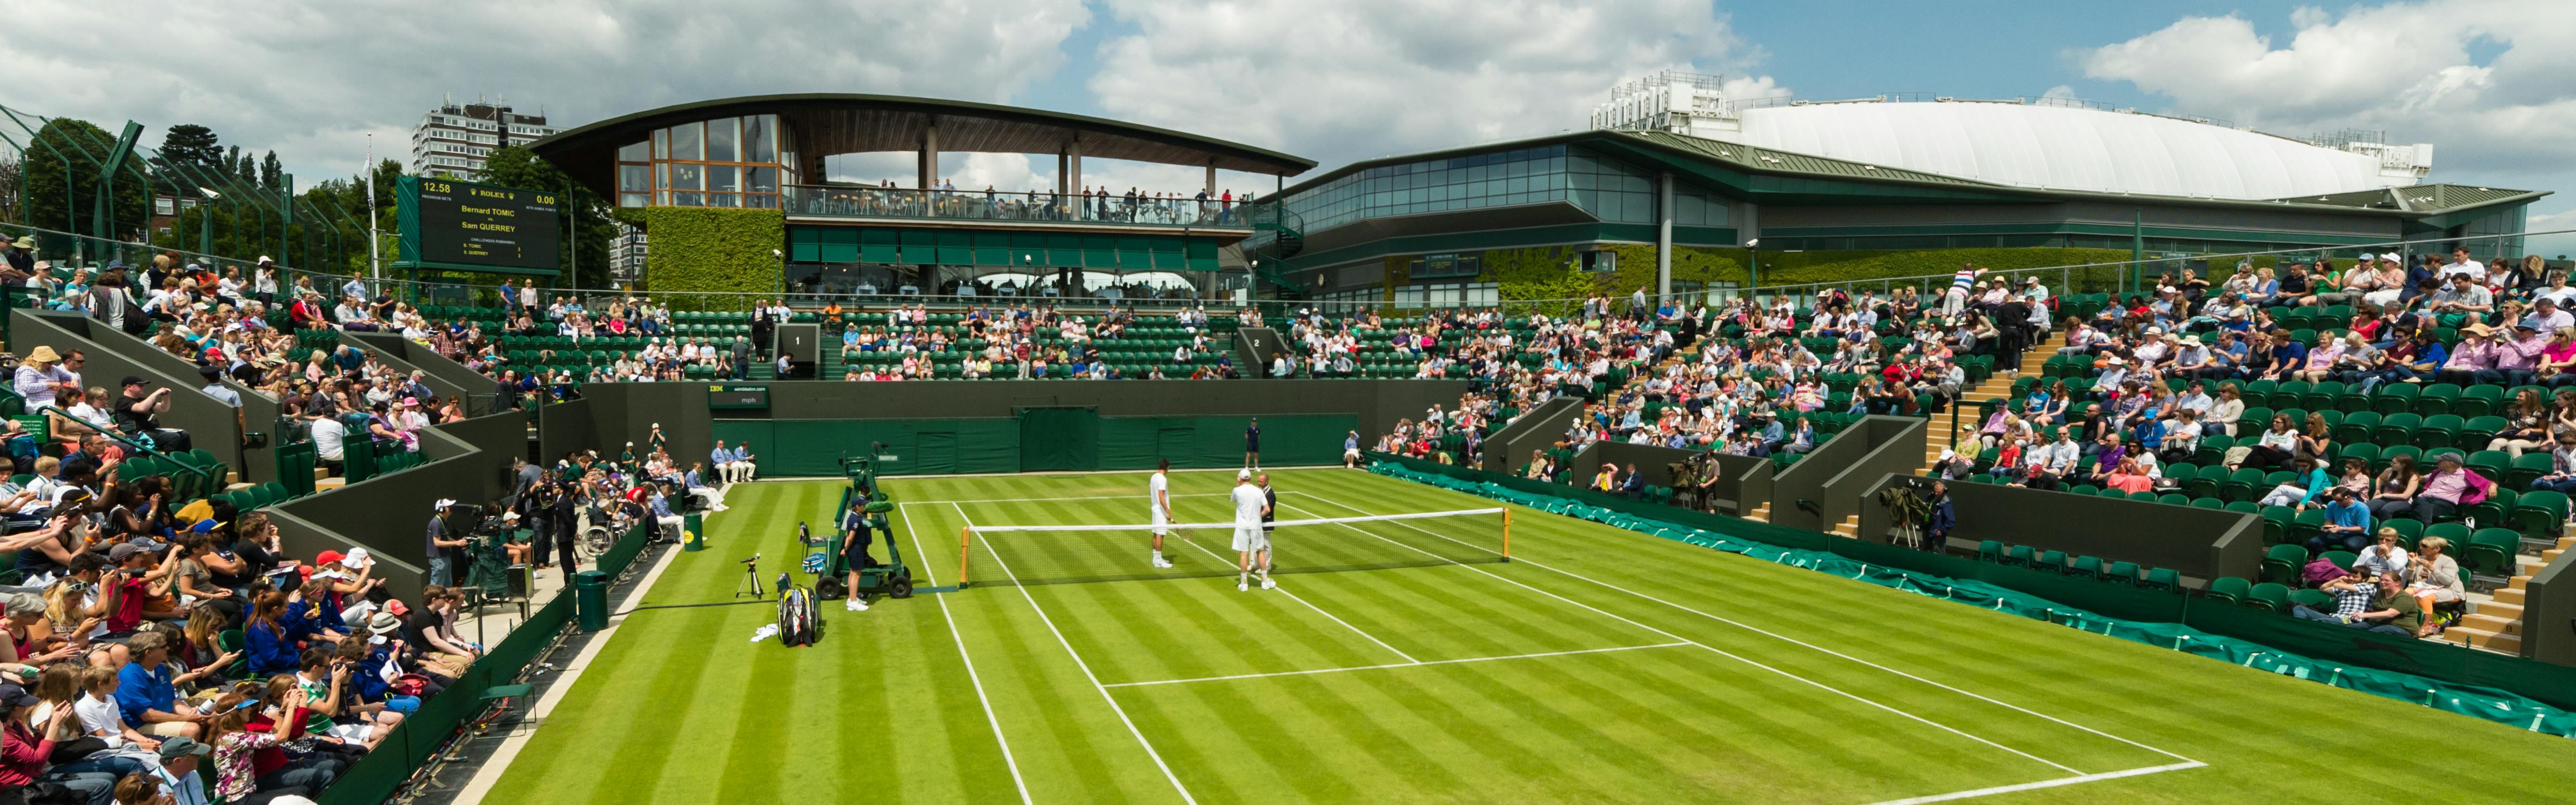 The grass court at Wimbledon during a match. 